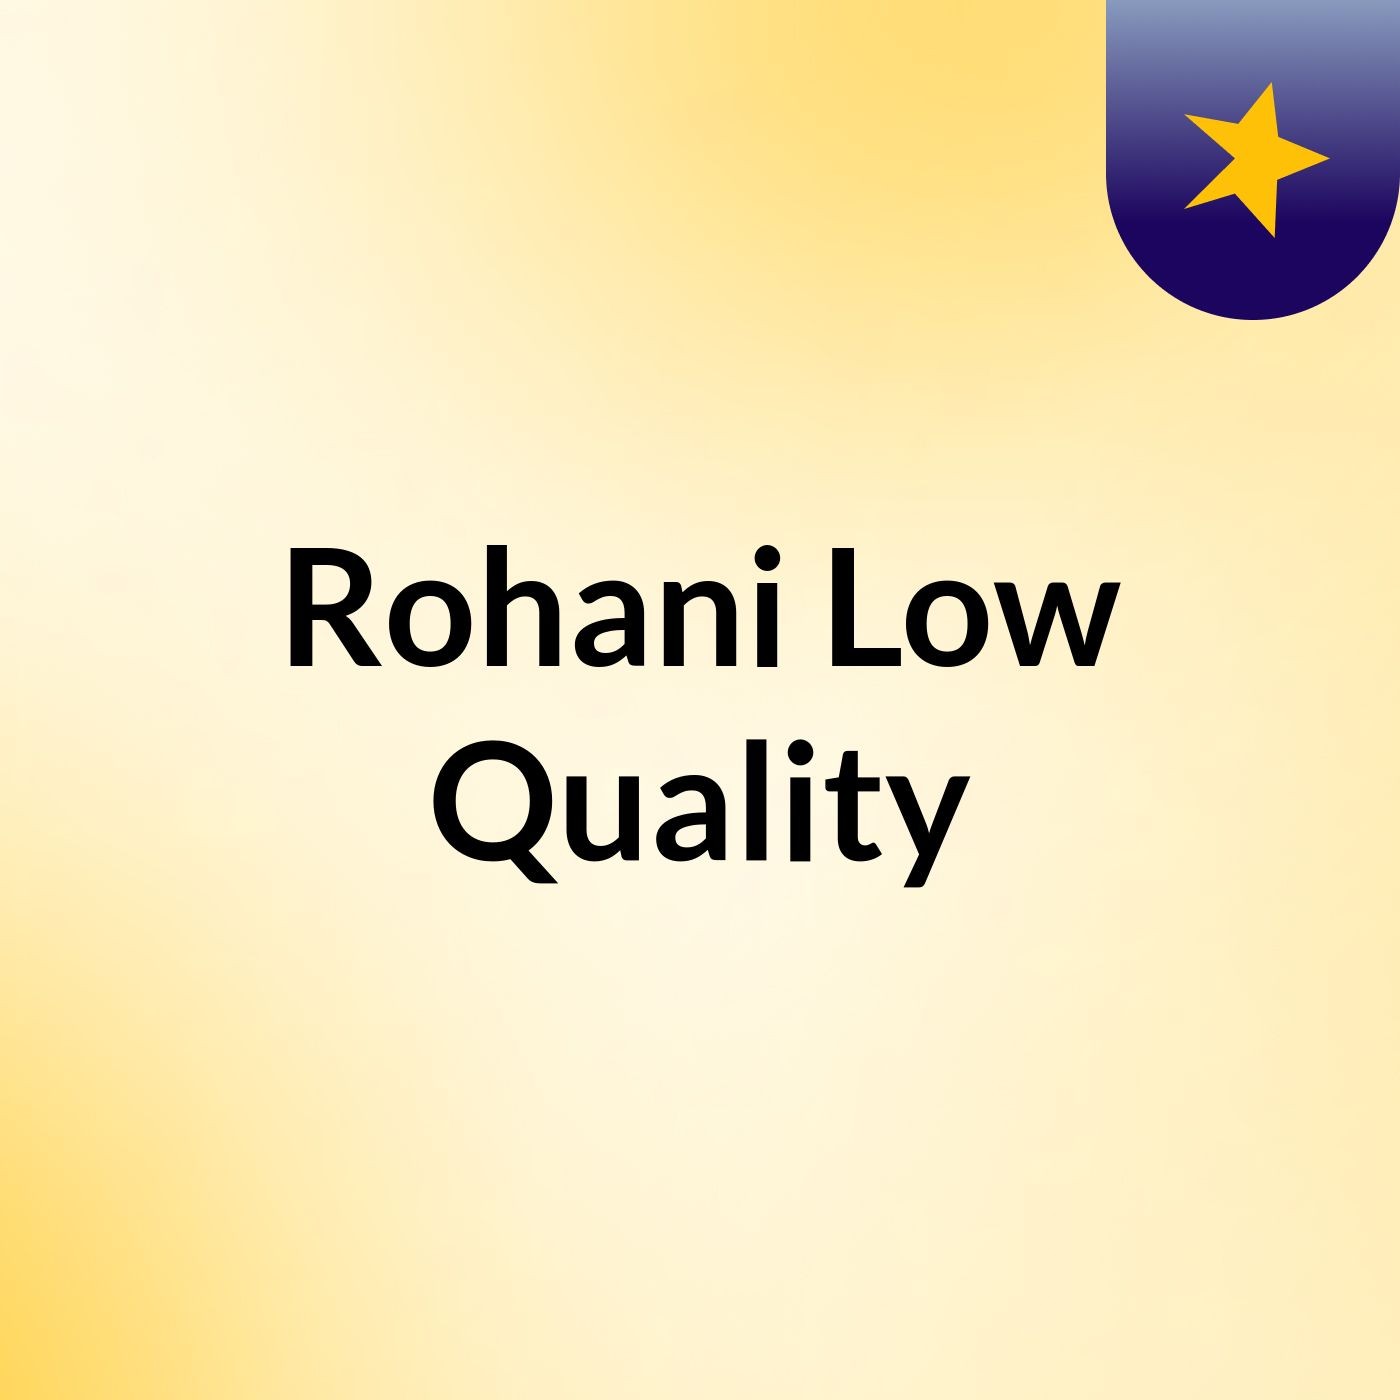 Rohani Low Quality